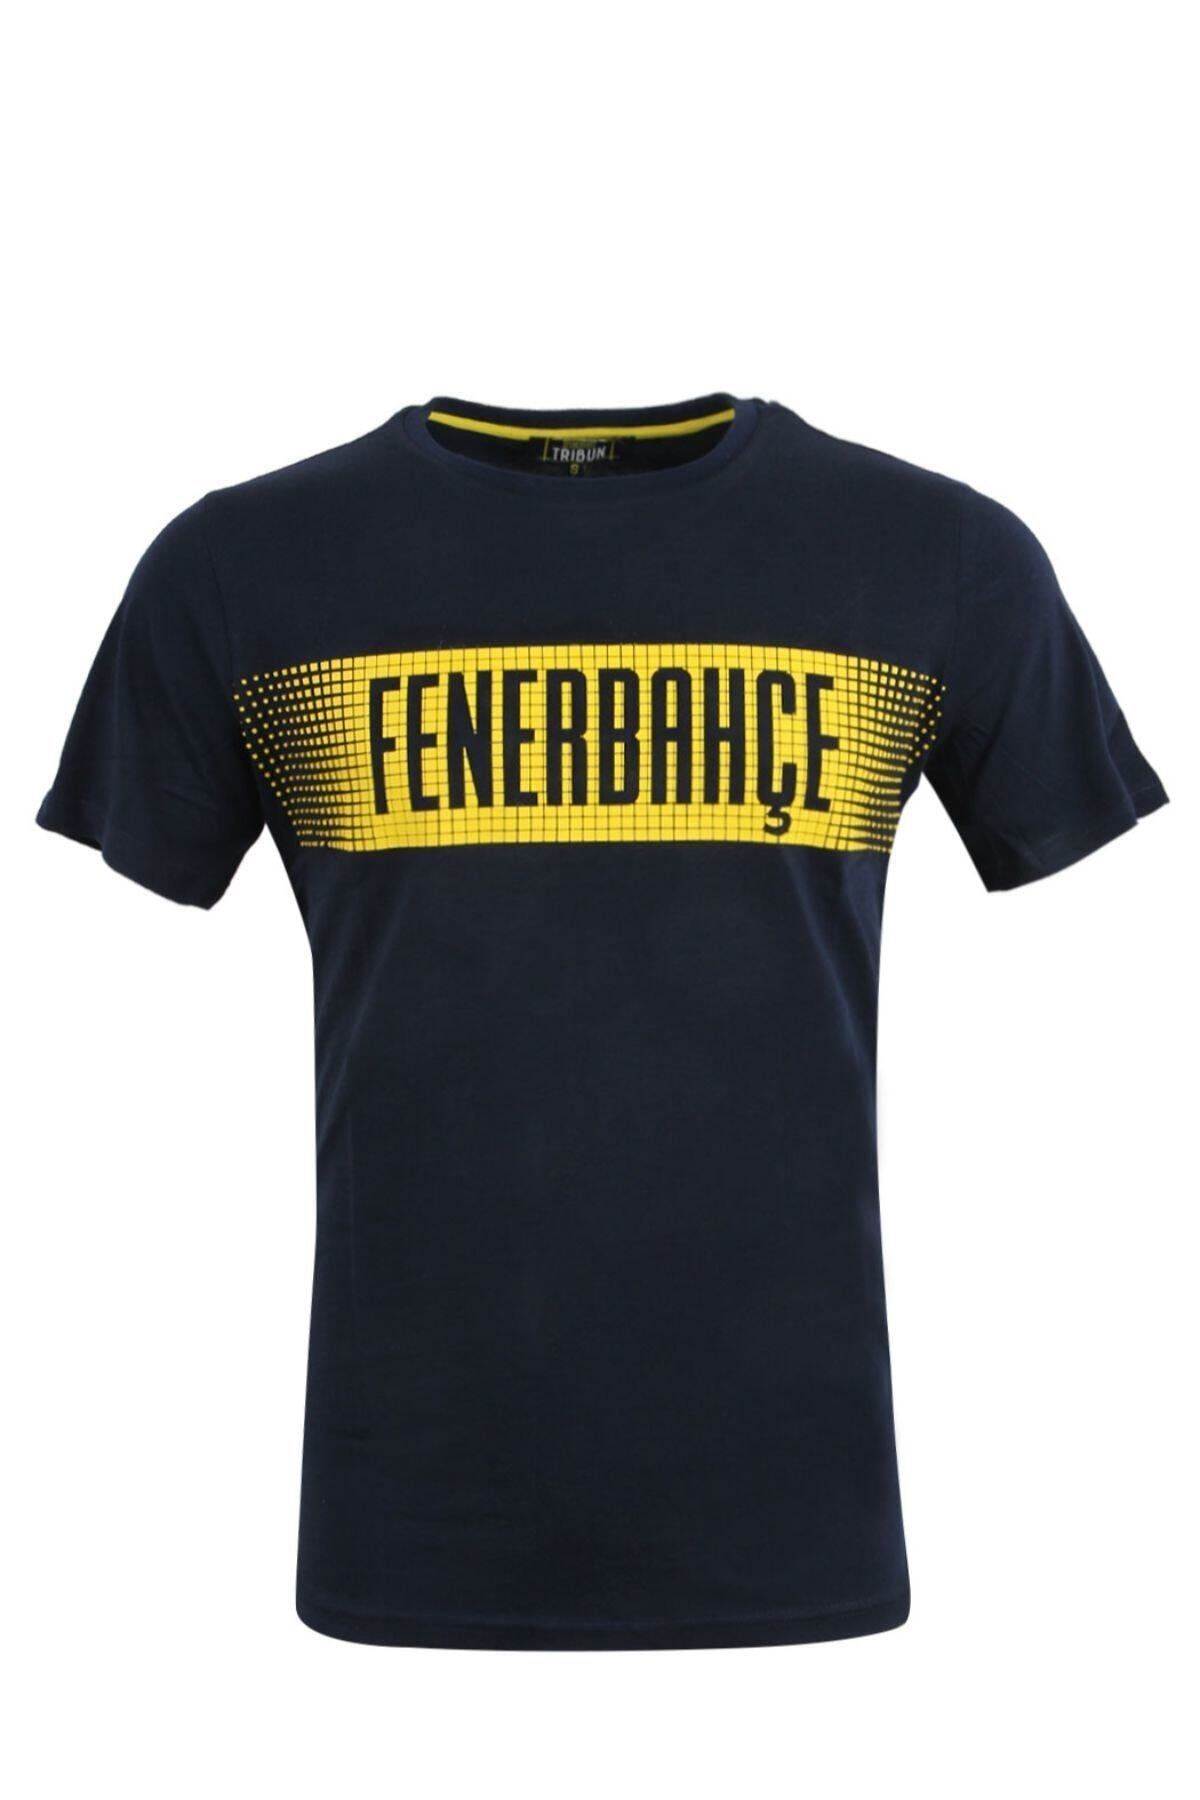 Fenerbahçe Erkek Sarı Enjeksiyon T-shırt